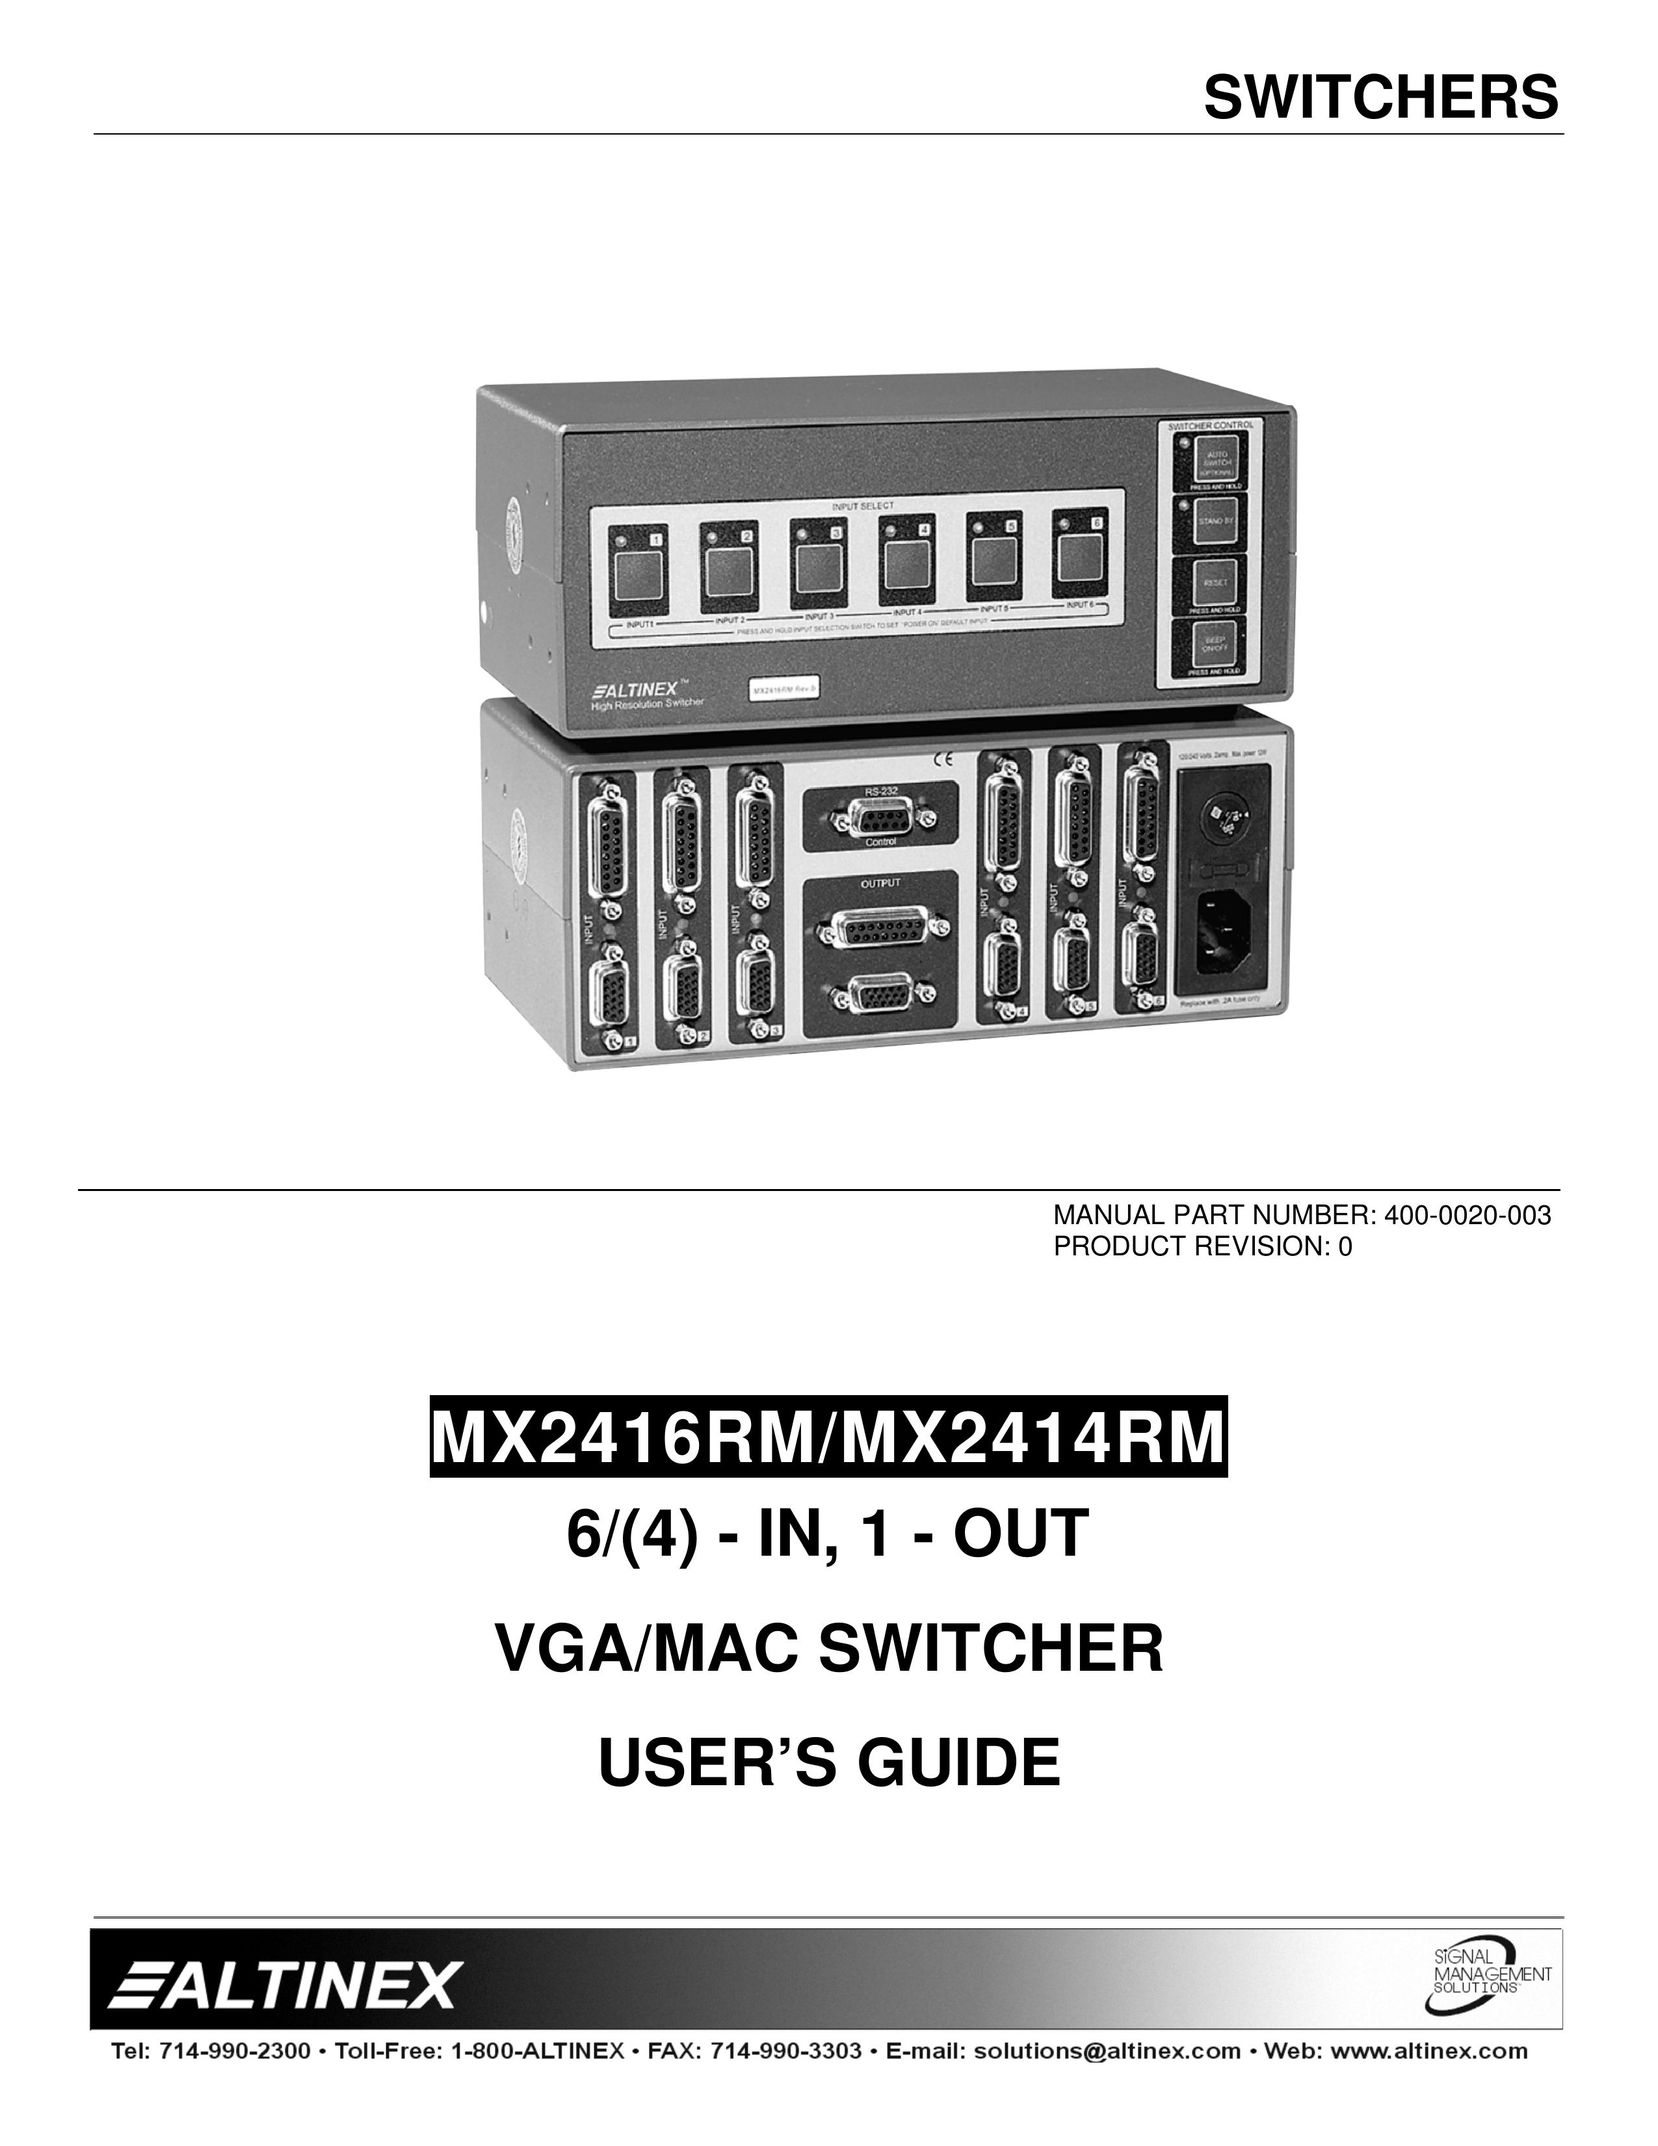 Altinex MX2414RM Switch User Manual